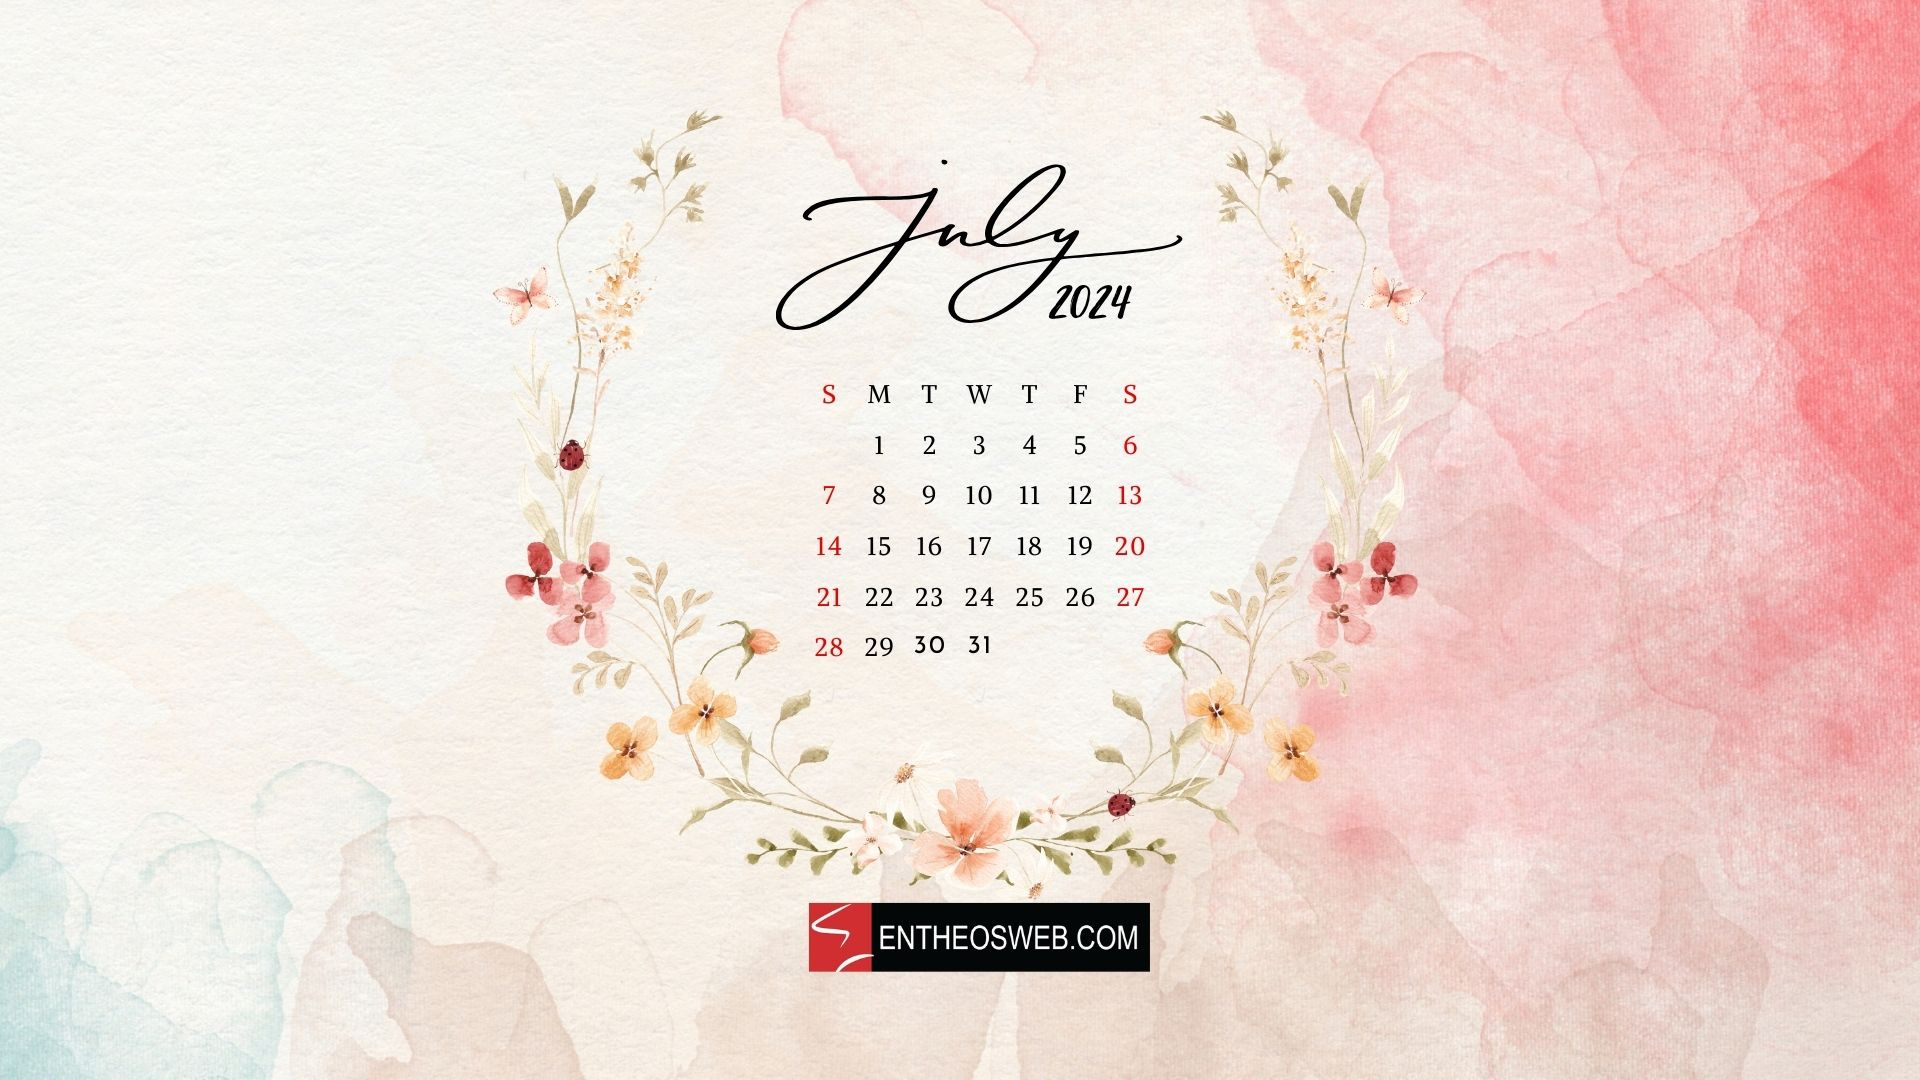 July 2024 Desktop Wallpaper Calendar | Entheosweb throughout July 2024 Calendar Screensaver